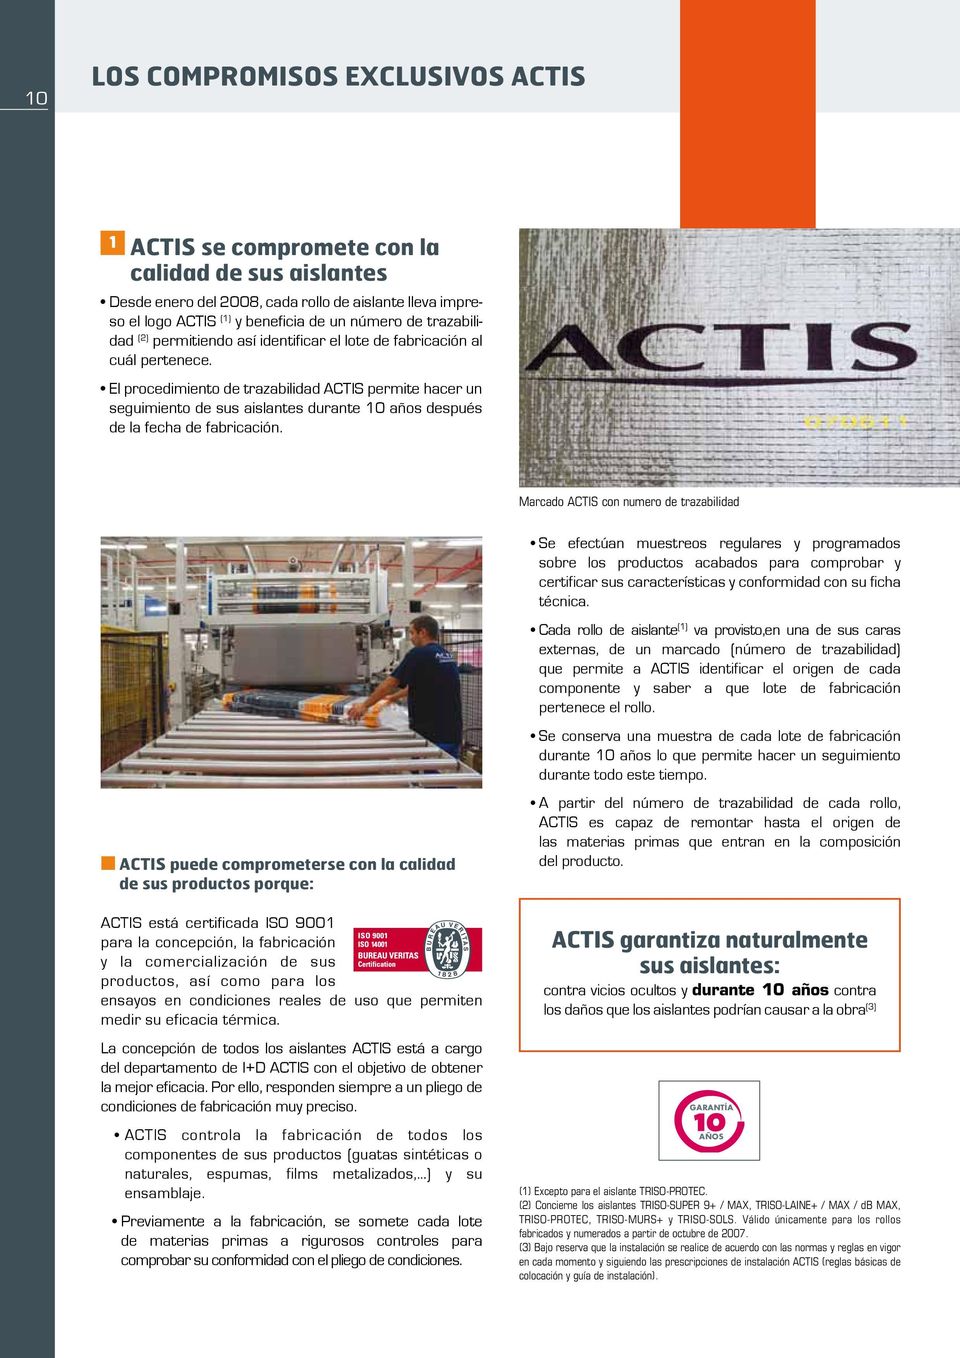 El procedimiento de trazabilidad ACTIS permite hacer un seguimiento de sus aislantes durante 10 años después de la fecha de fabricación.